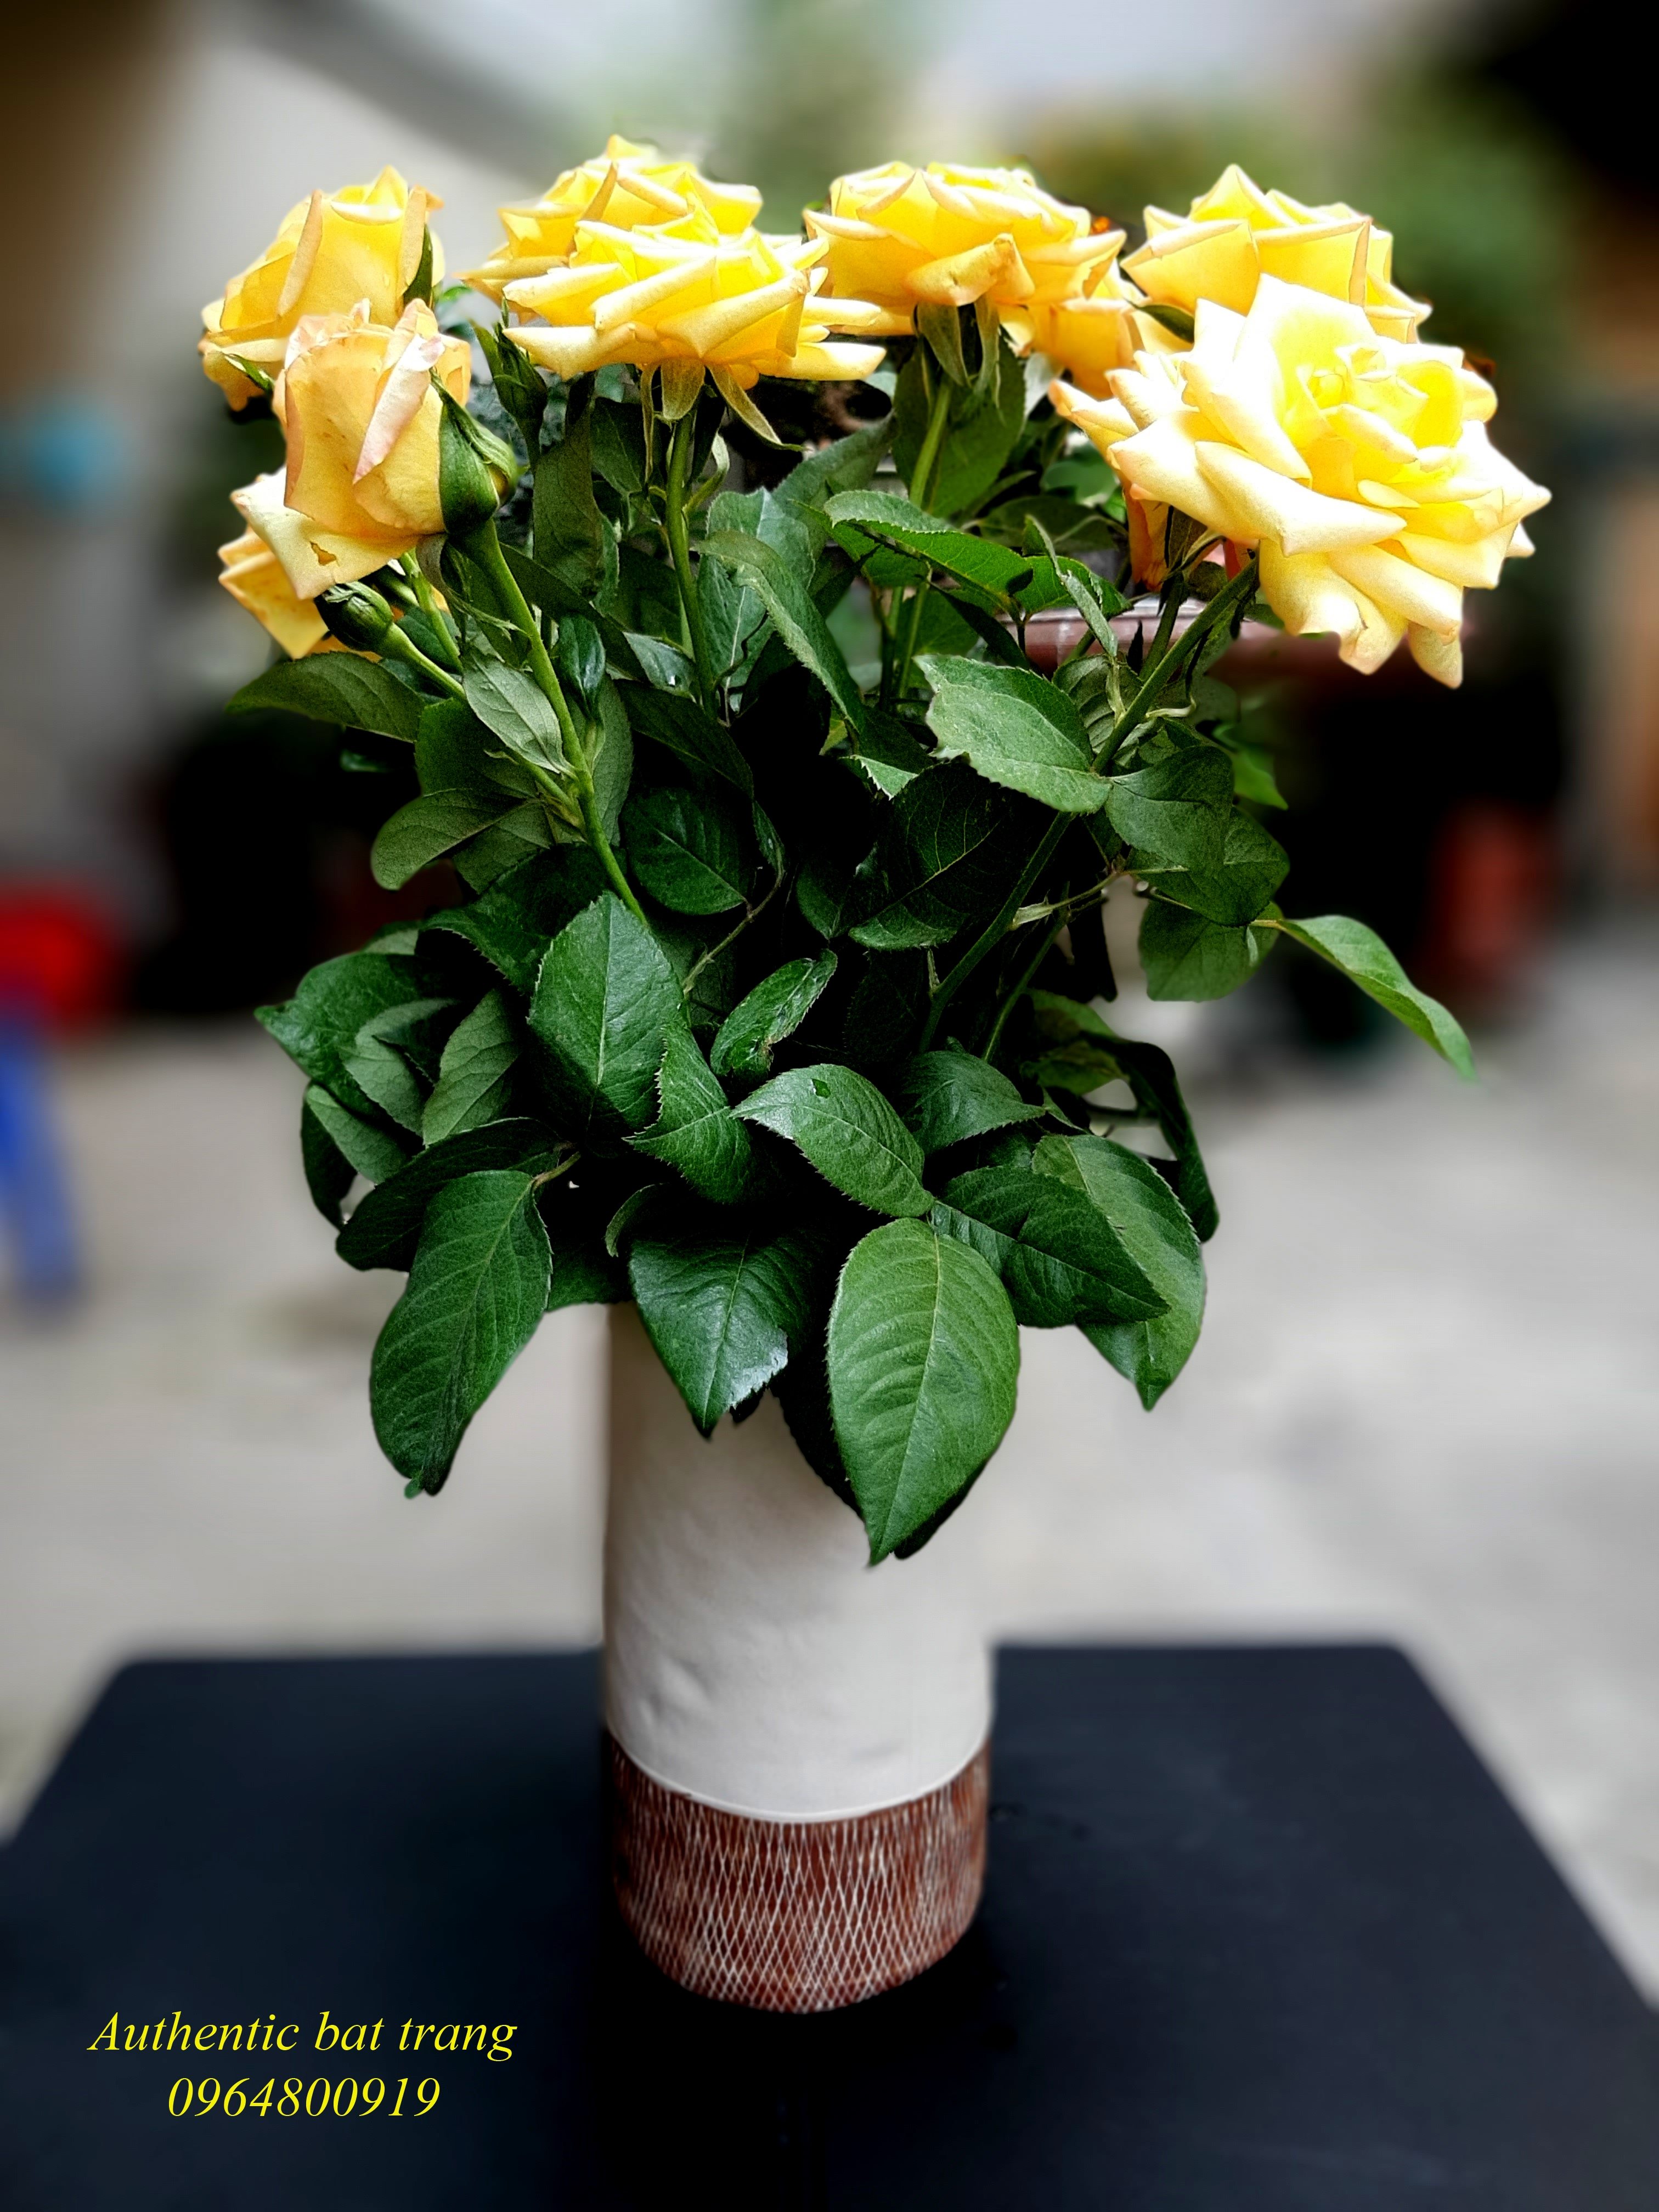 Ceramics vase/ bình cắm hoa xuất âu sản phẩm trang trí nhà cửa đẹp, sang trọng sản xuất tại bát tràng, việt nam